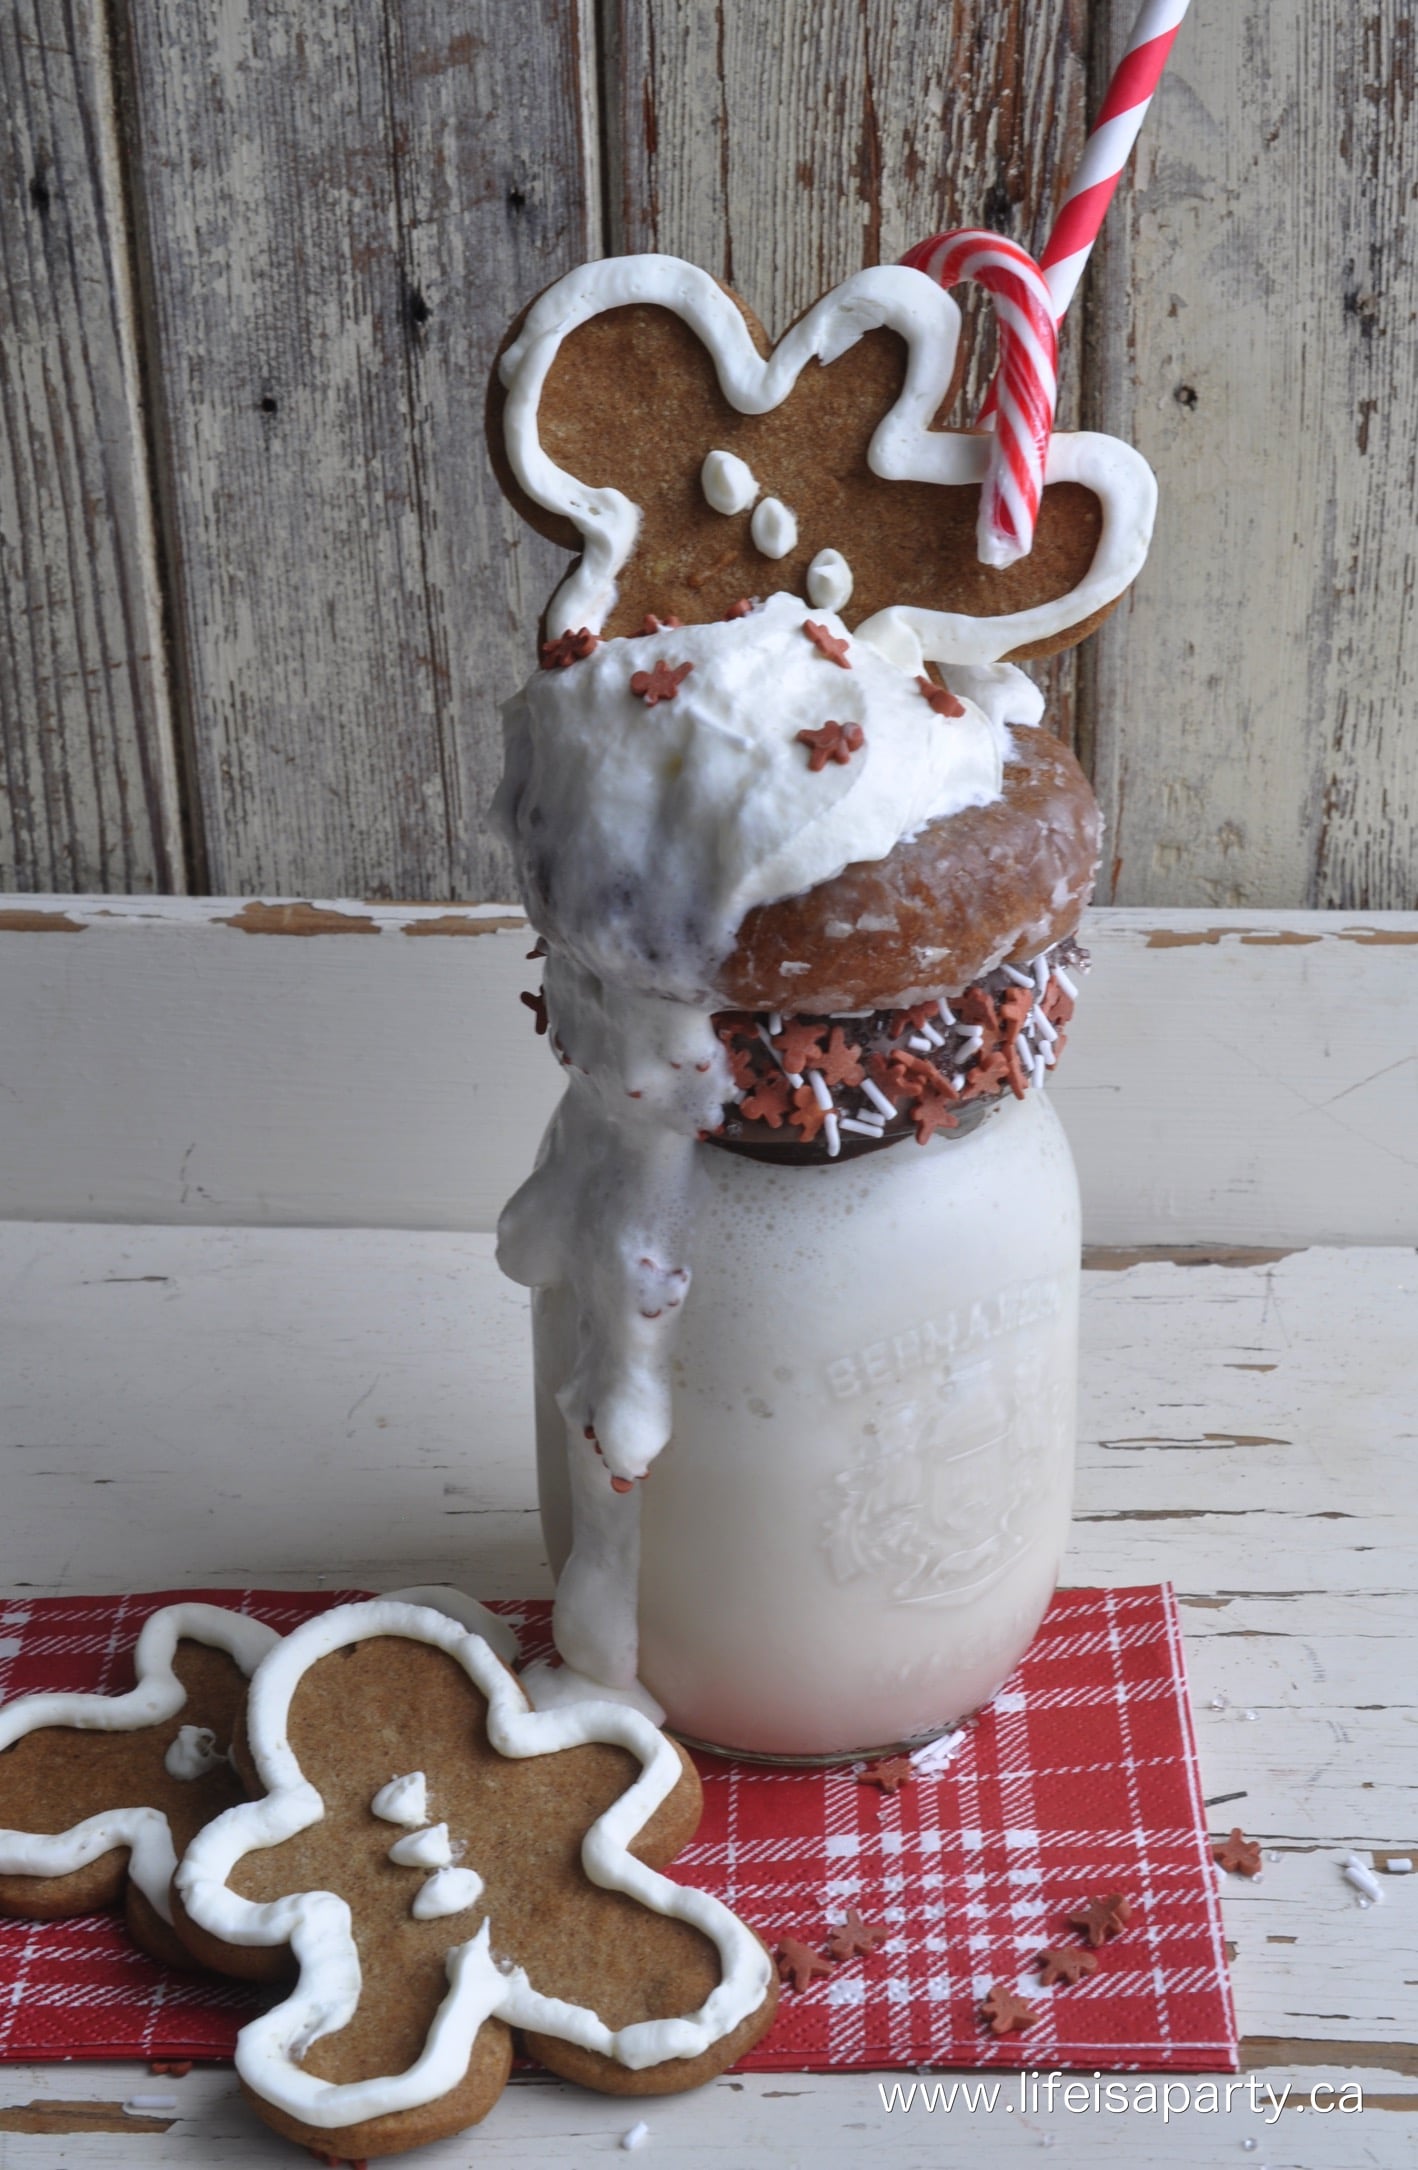 Gingerbread Extreme Milkshake Freakshake: Recipe for gingerbread syrup and gingerbread milkshake for the holidays.